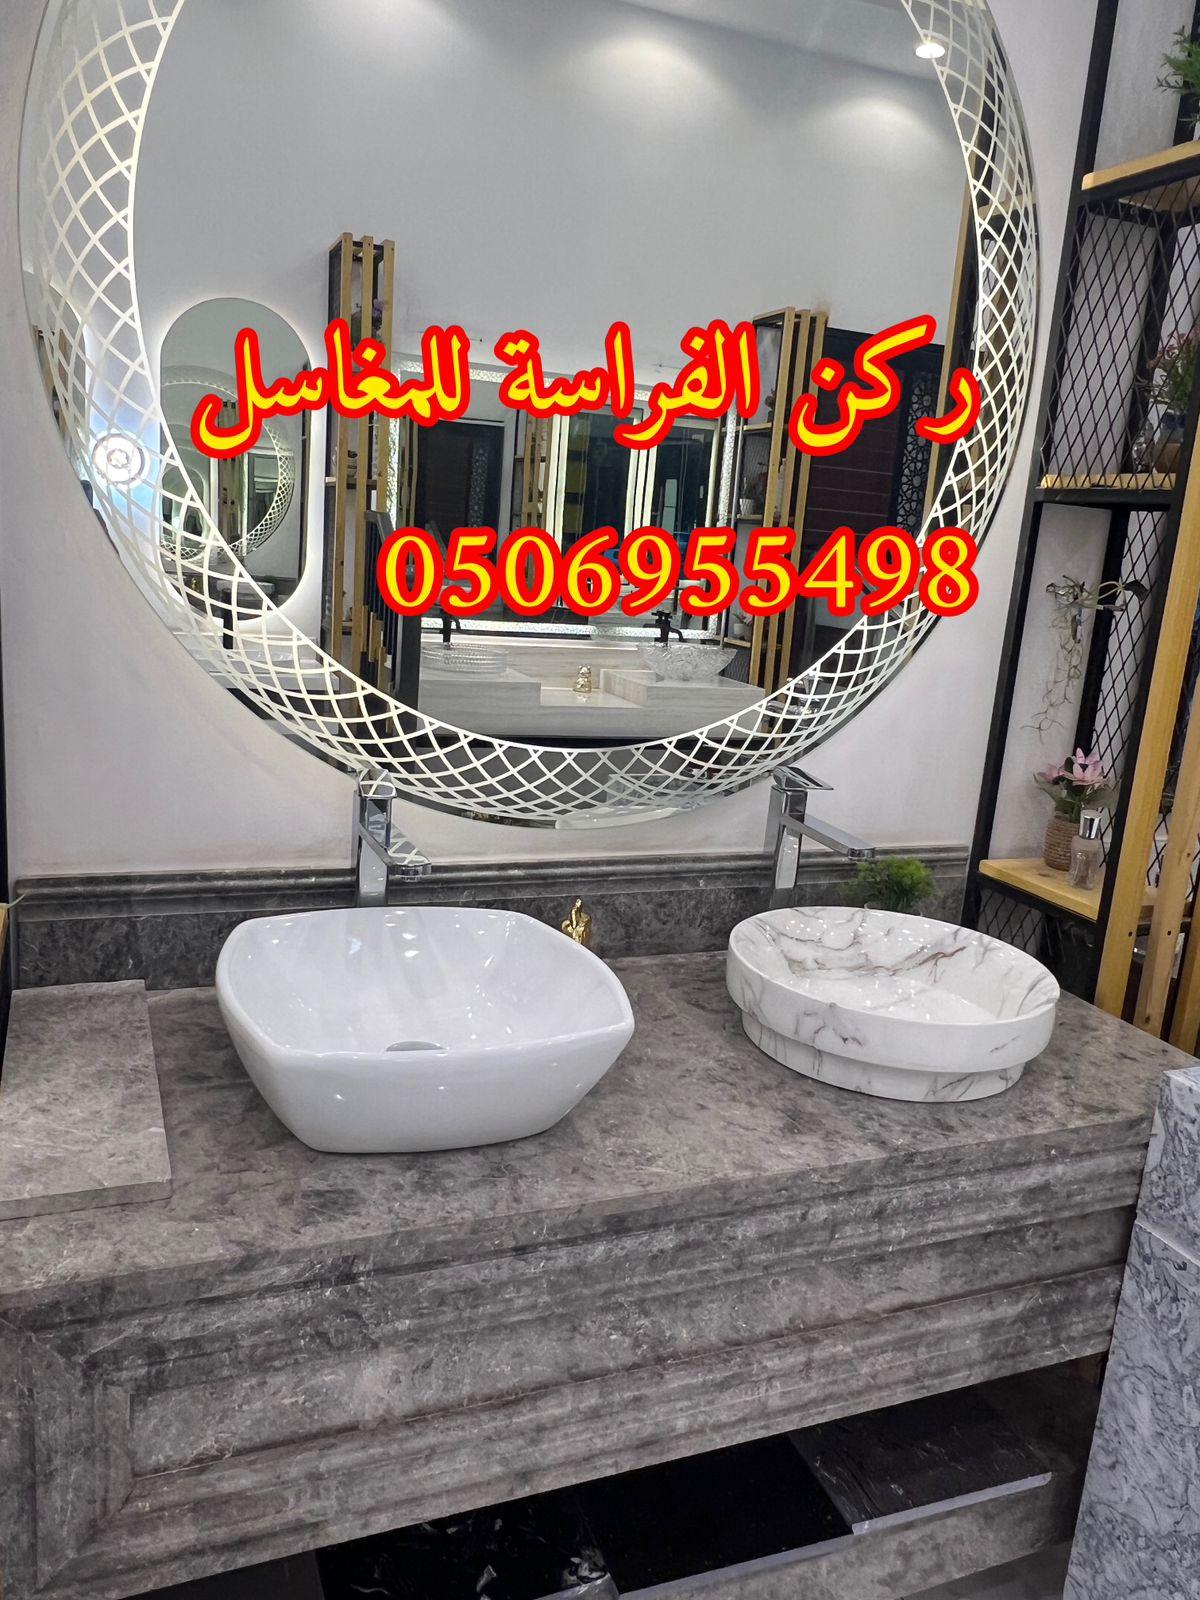 الرياض - اشكال مغاسل رخام حديثة في الرياض,0506955498 391858653